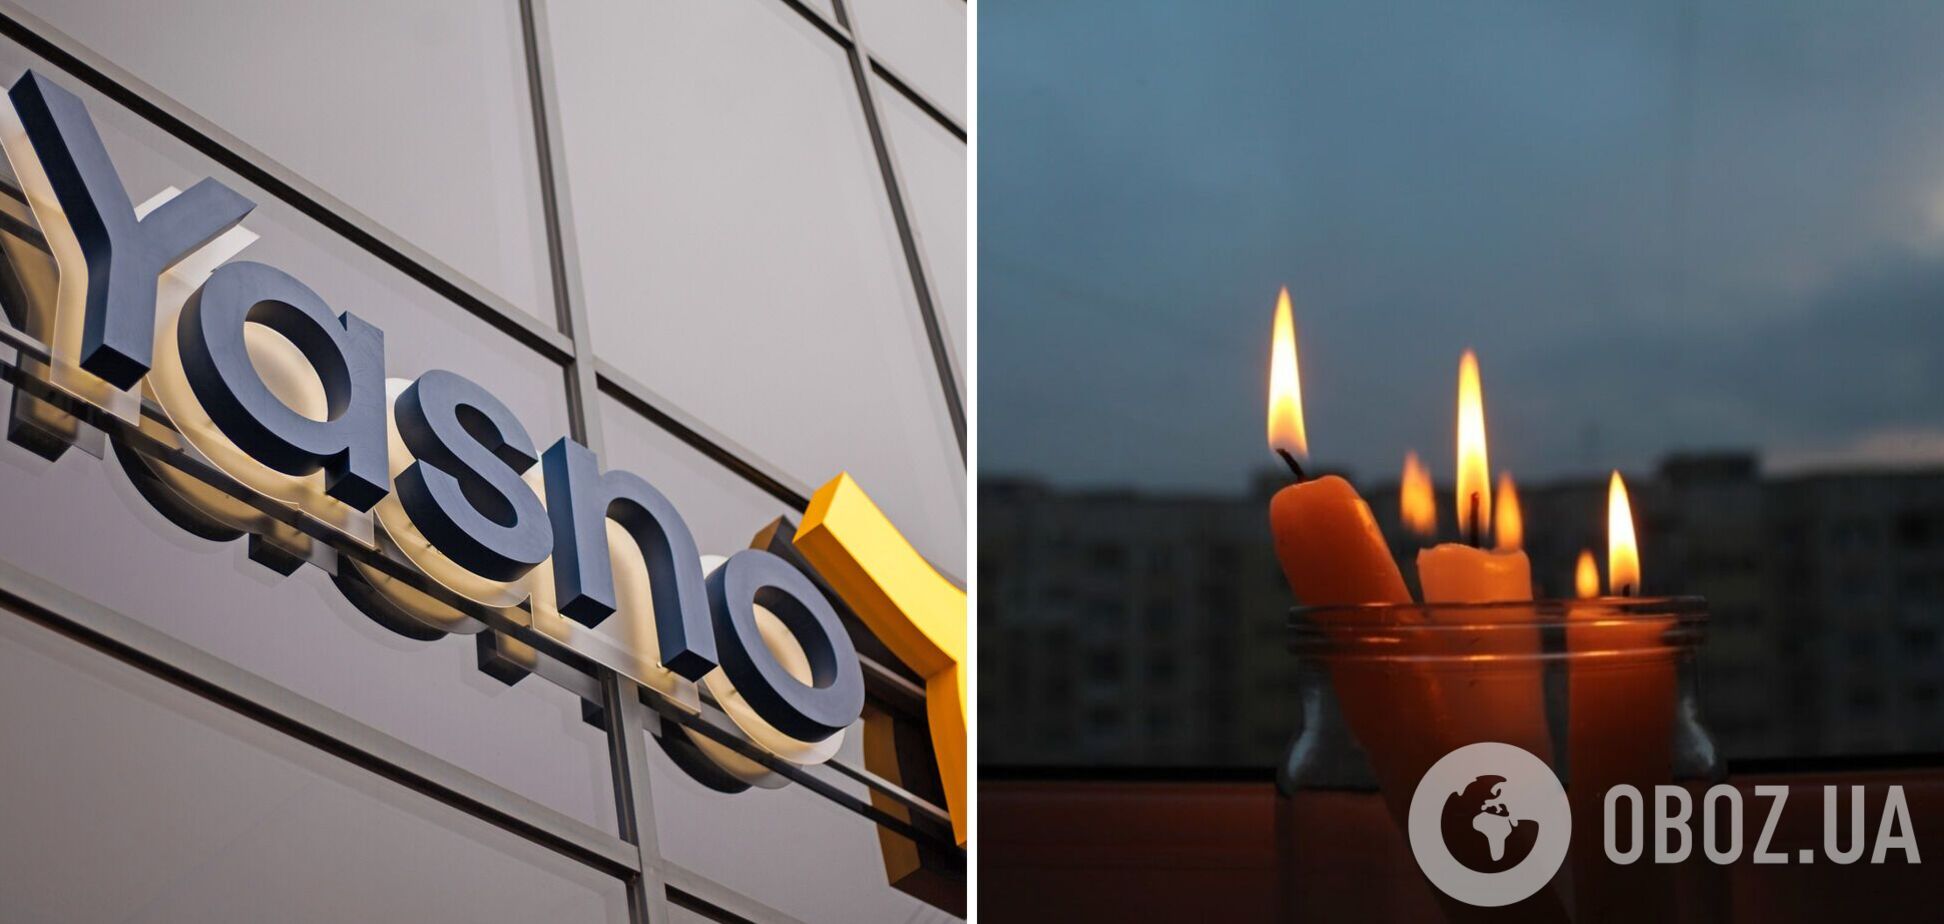 Отключения электроэнергии в Украине могут продолжаться до конца марта: в YASNO назвали два сценария развития ситуации